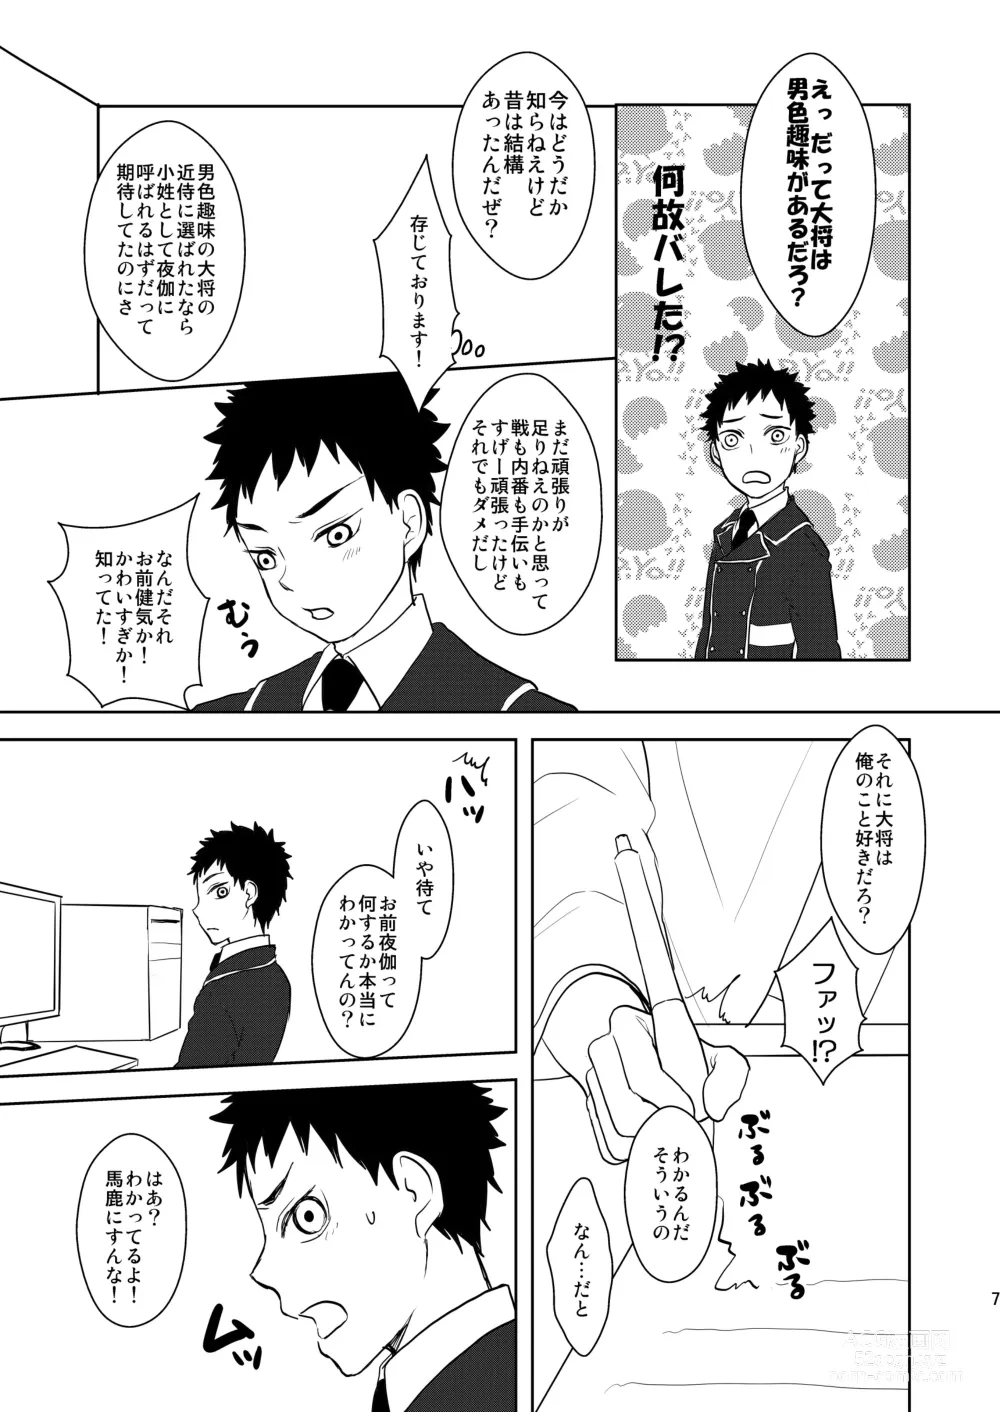 Page 6 of doujinshi Koukishinousei na Ore no Kawaii Kinji ga Yotogi o Sematte Kuru